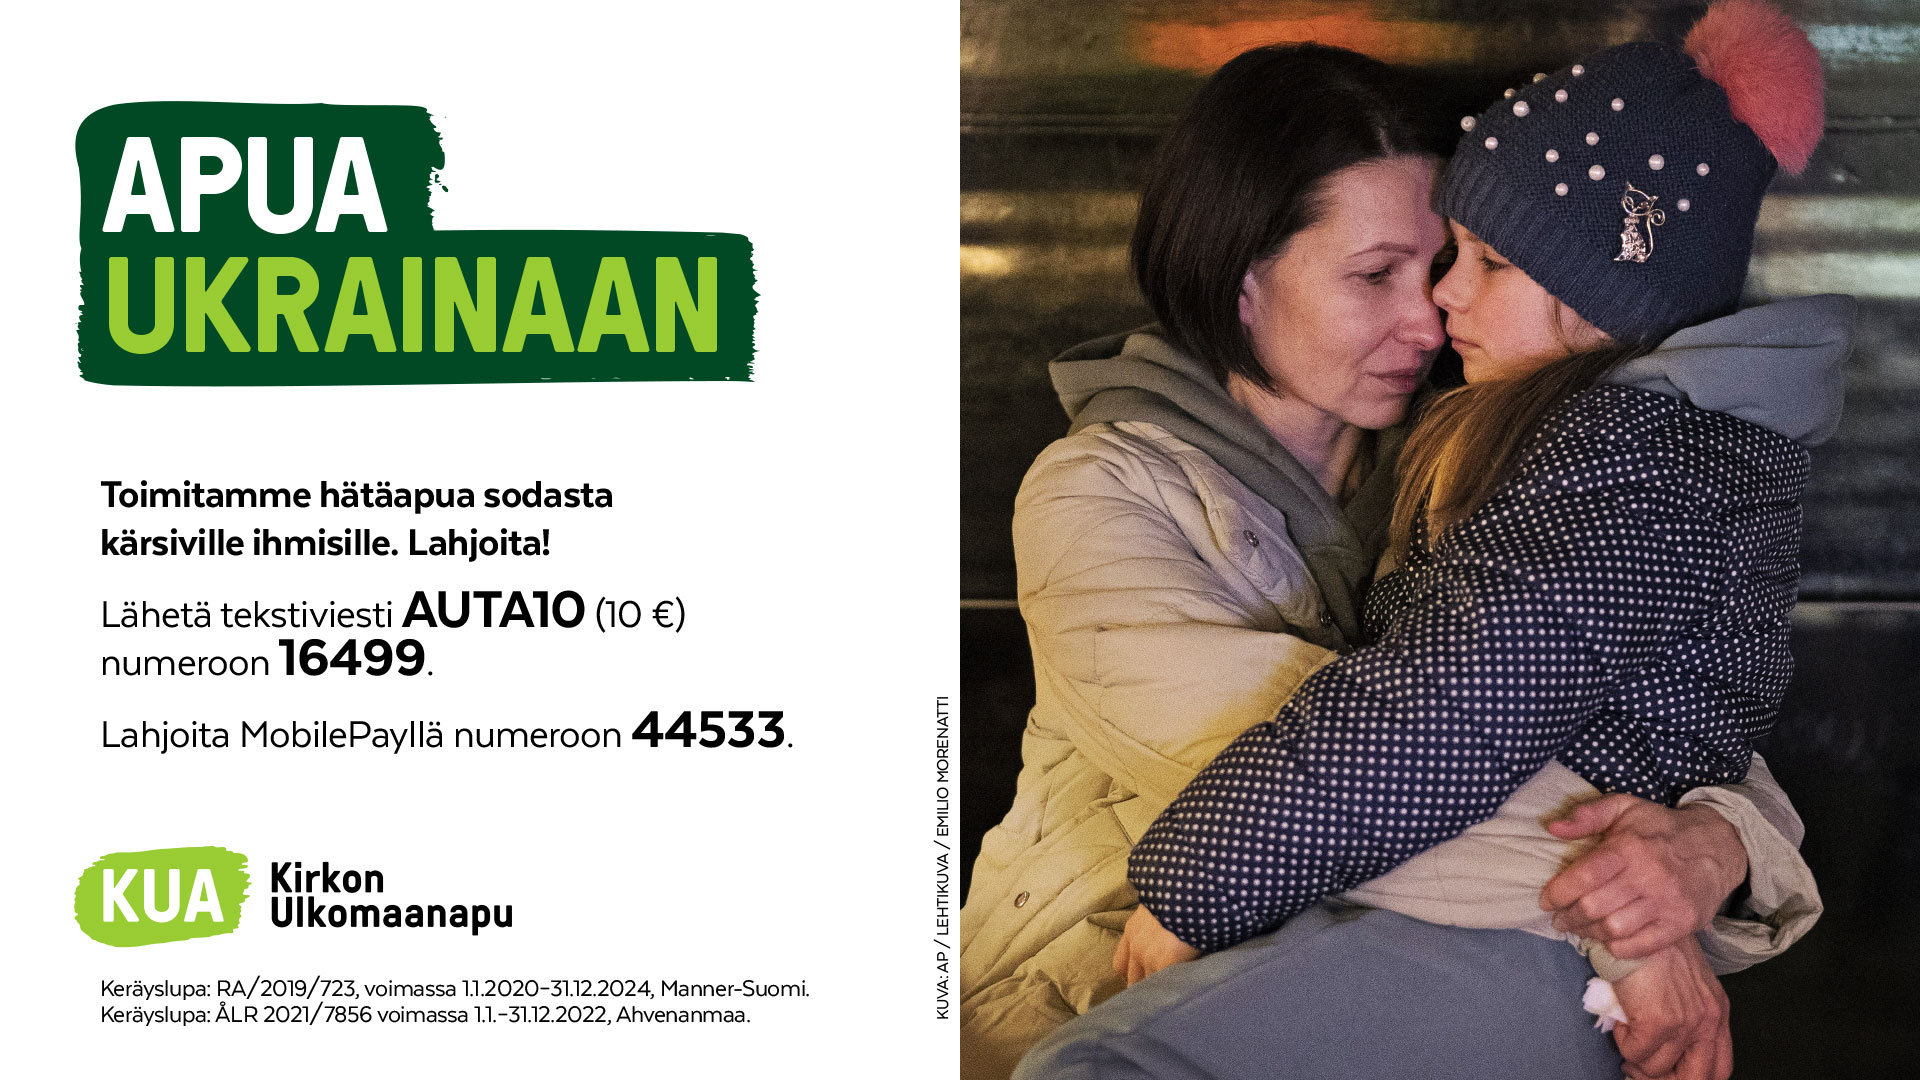 Apua Ukrainaan -keräystietoa ja kuvassa äiti lapsi sylissään